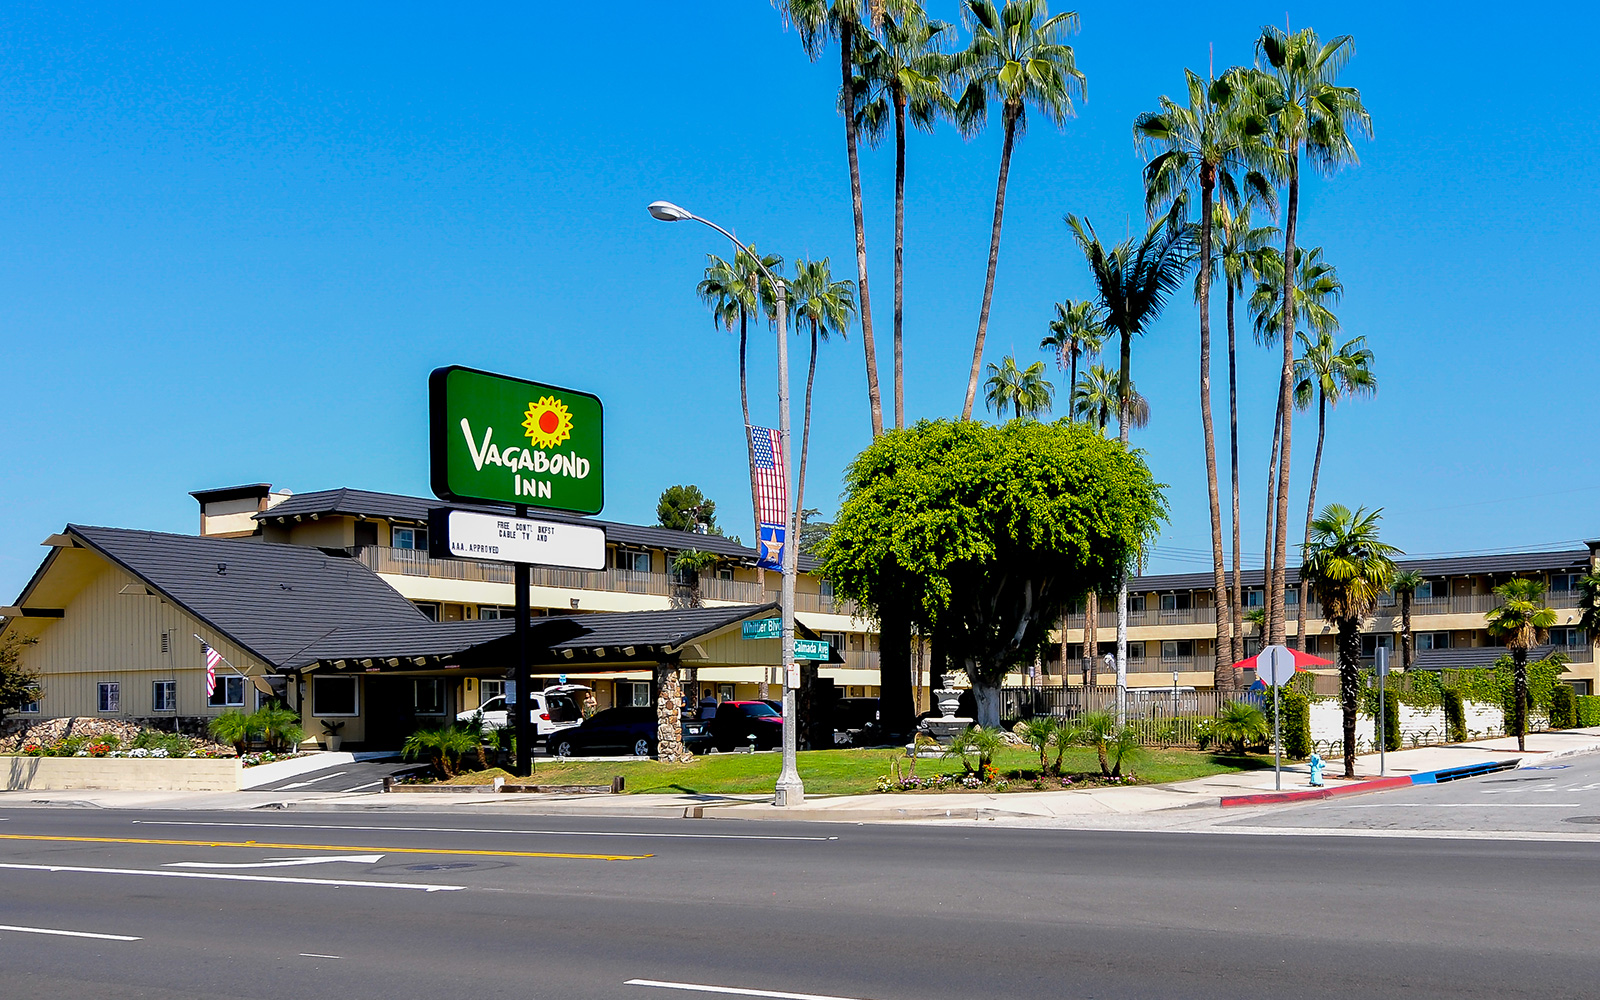 California Hotel Group Bookings - Vagabond Inn Hotels